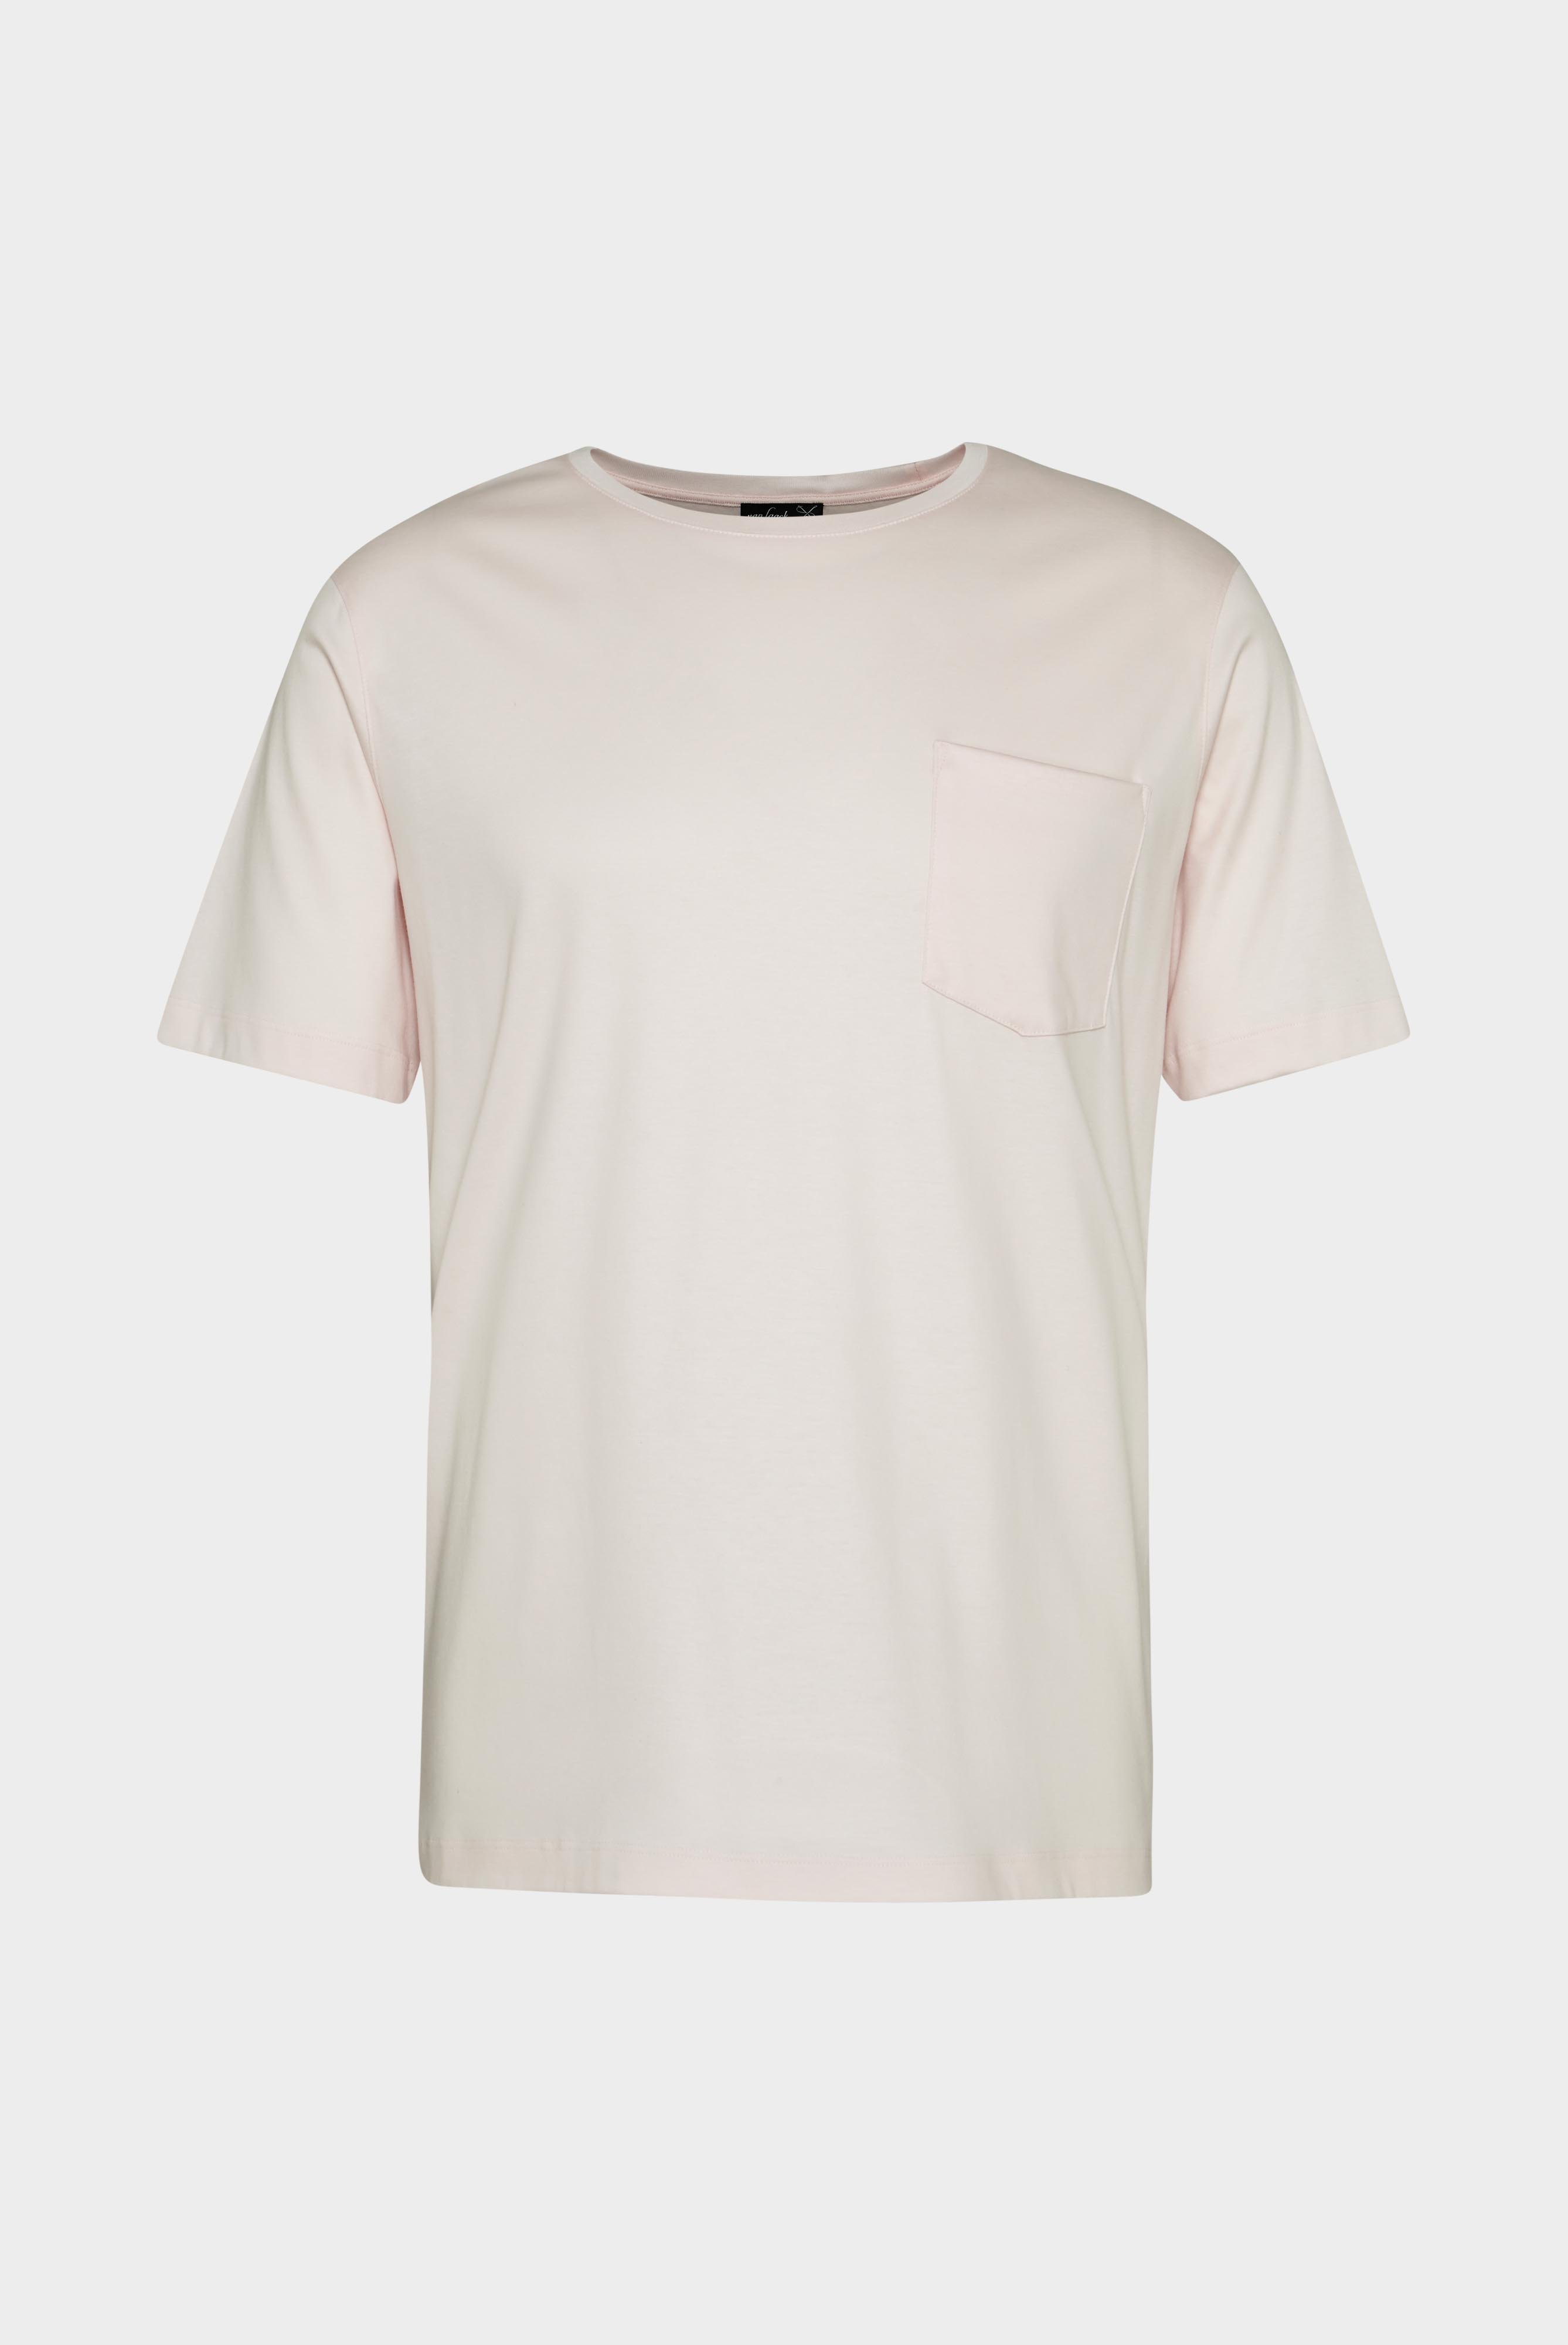 T-Shirts+Oversize Jersey T-Shirt mit Brusttasche+20.1776.GZ.180031.510.S